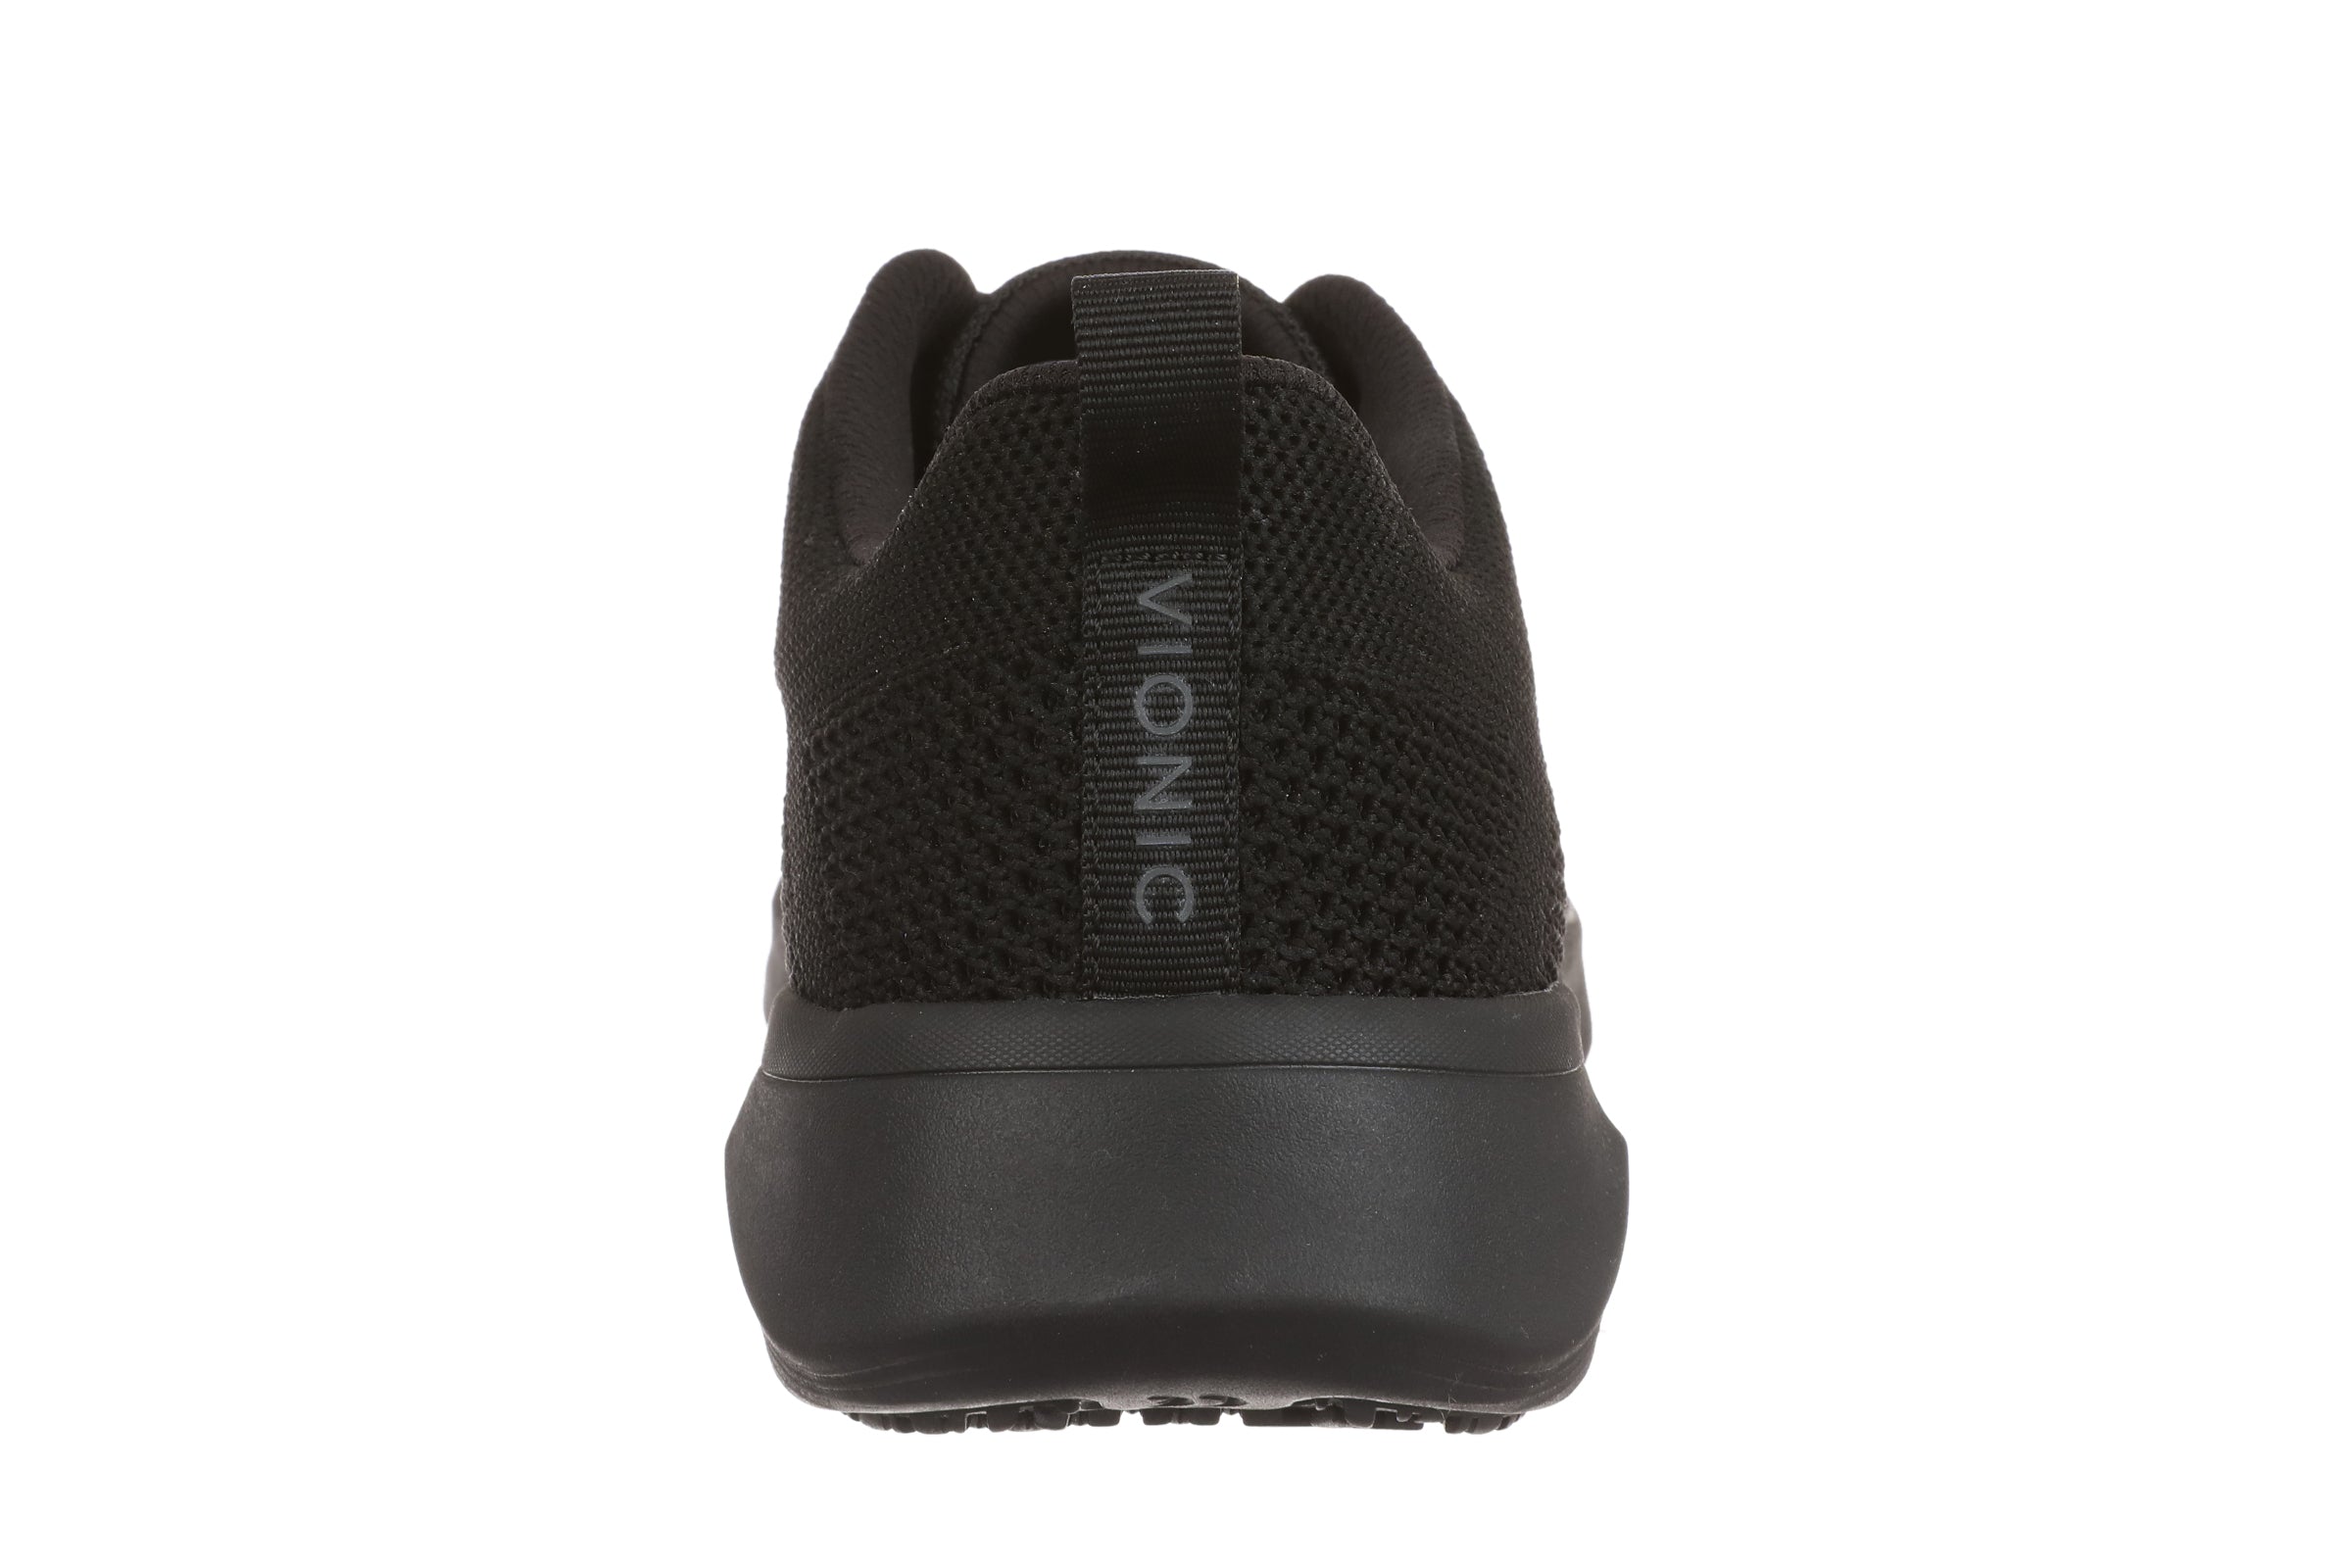 Women's Vionic Arrival Sneaker Color: Black